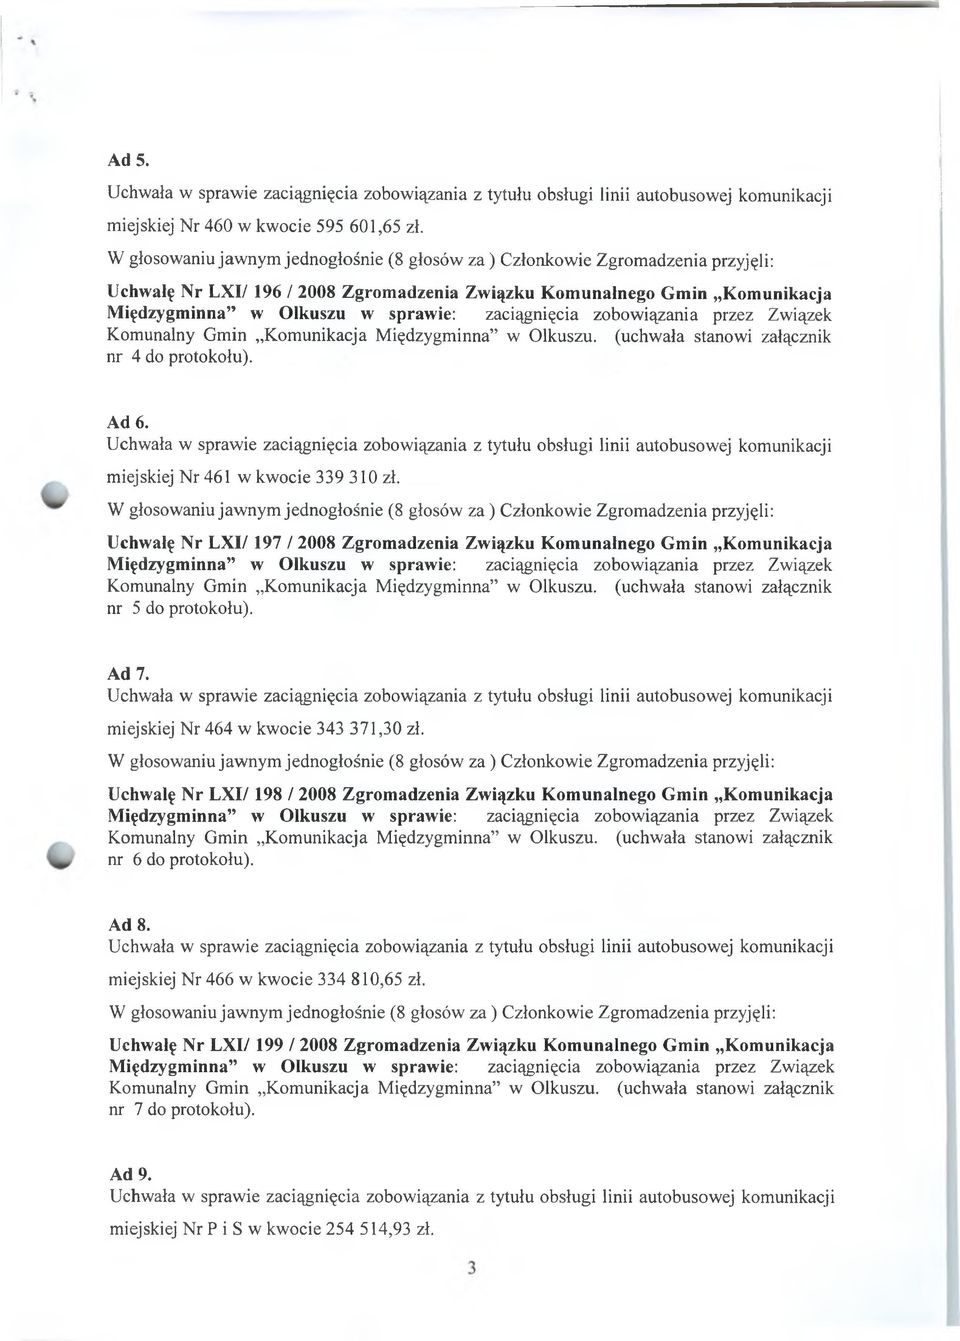 zaciągnięcia zobow iązania przez Związek Komunalny Gmin Komunikacja M iędzygminna w Olkuszu, (uchwała stanowi załącznik nr 4 do protokołu). Ad 6.